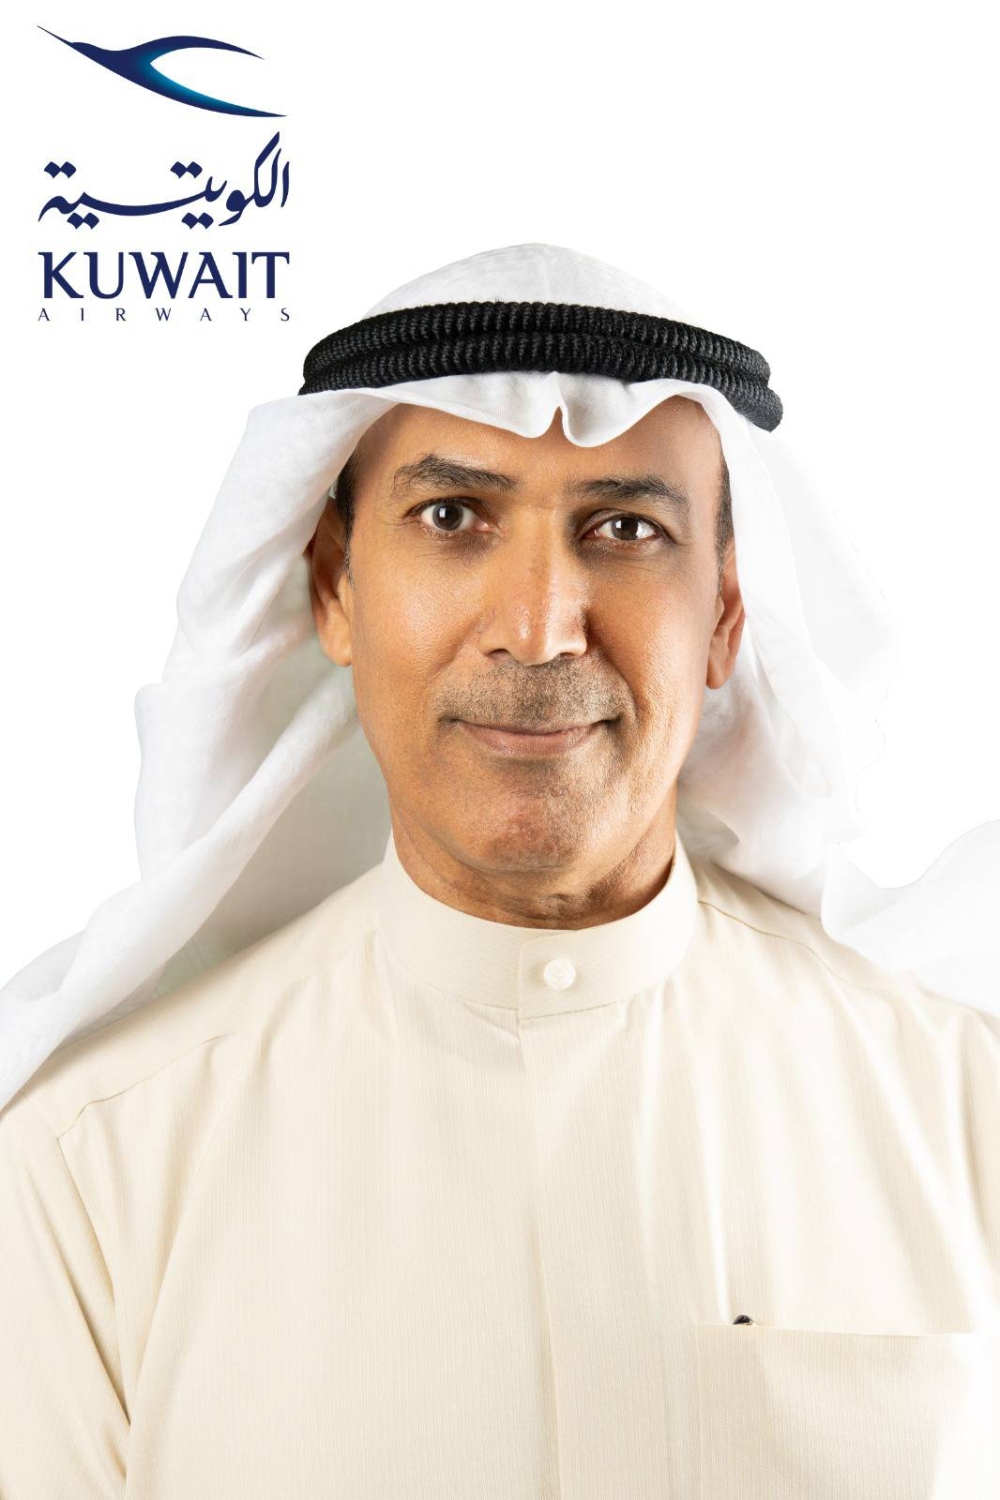 رئيس مجلس إدارة الخطوط الجوية الكويتية الكابتن عبدالمحسن الفقعان